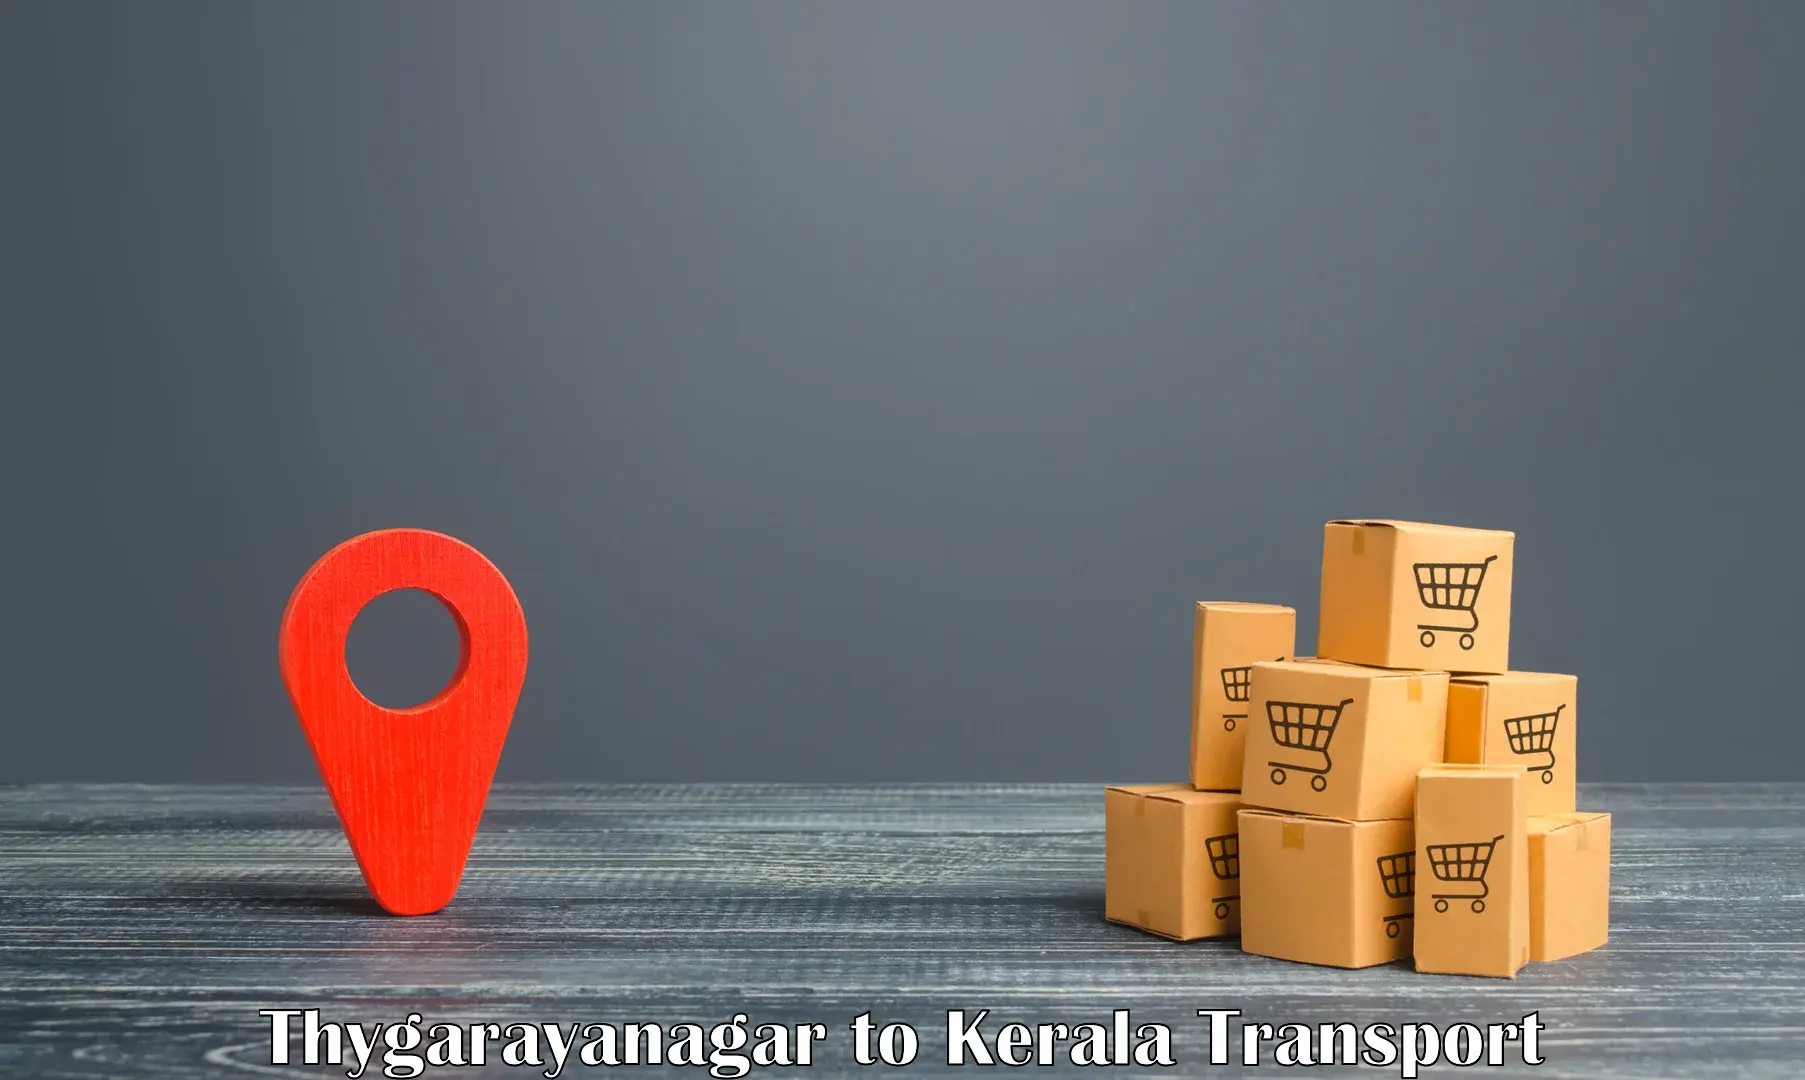 Container transport service Thygarayanagar to Wadakkanchery